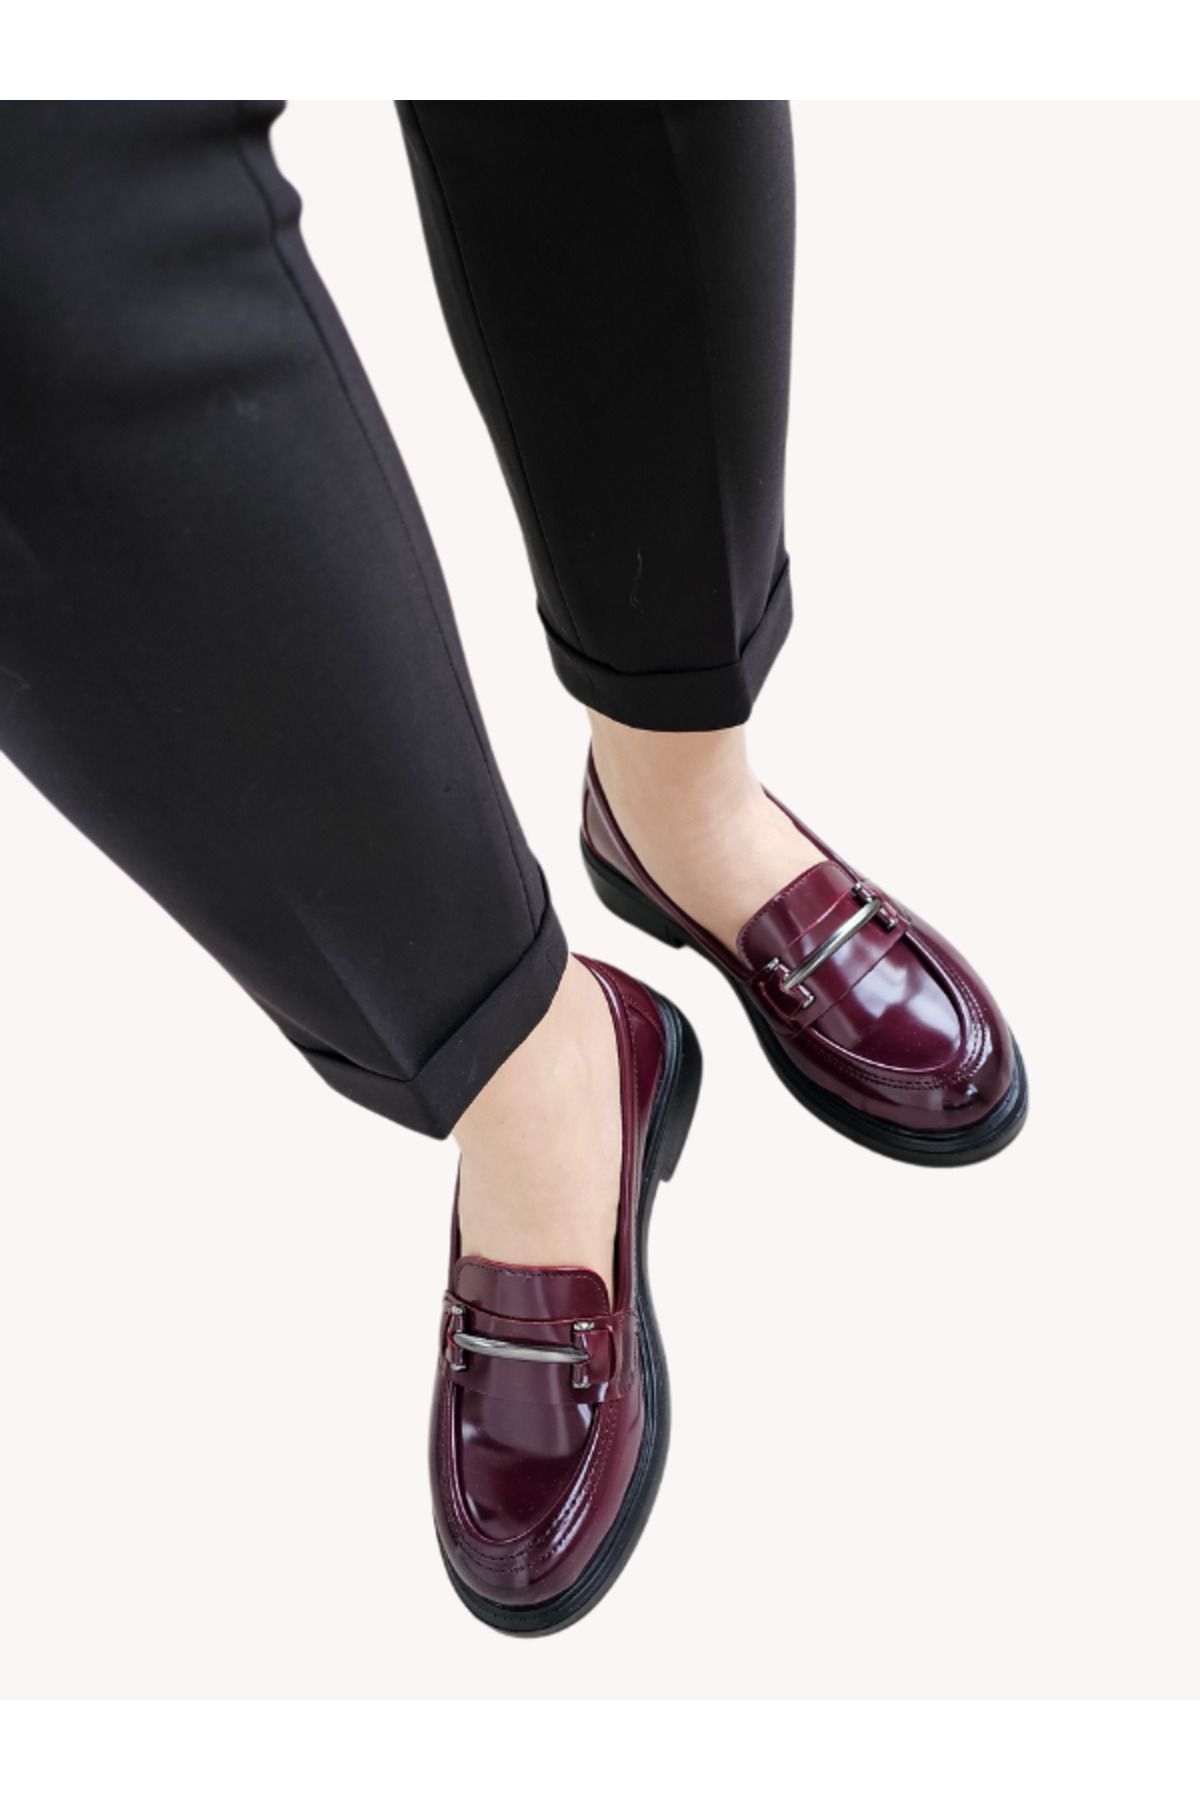 Cenova Kadın Rubby Loafer Tokalı Günlük Ayakkabı